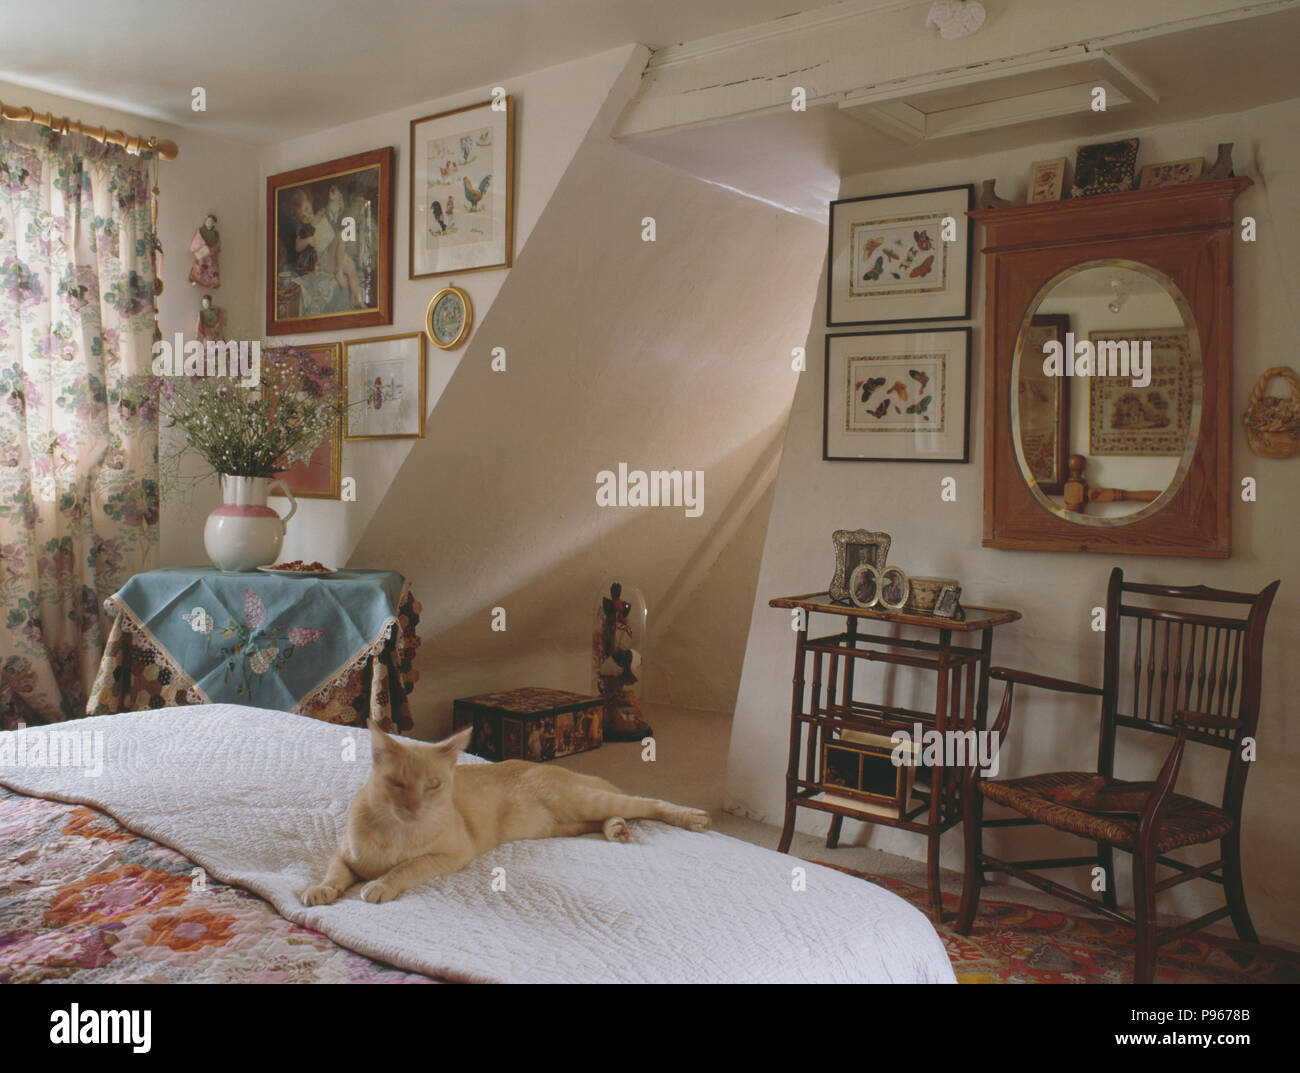 Katze auf dem Bett im Schlafzimmer Ferienhaus mit antiker Spiegel und  Bilder an der Wand Stockfotografie - Alamy